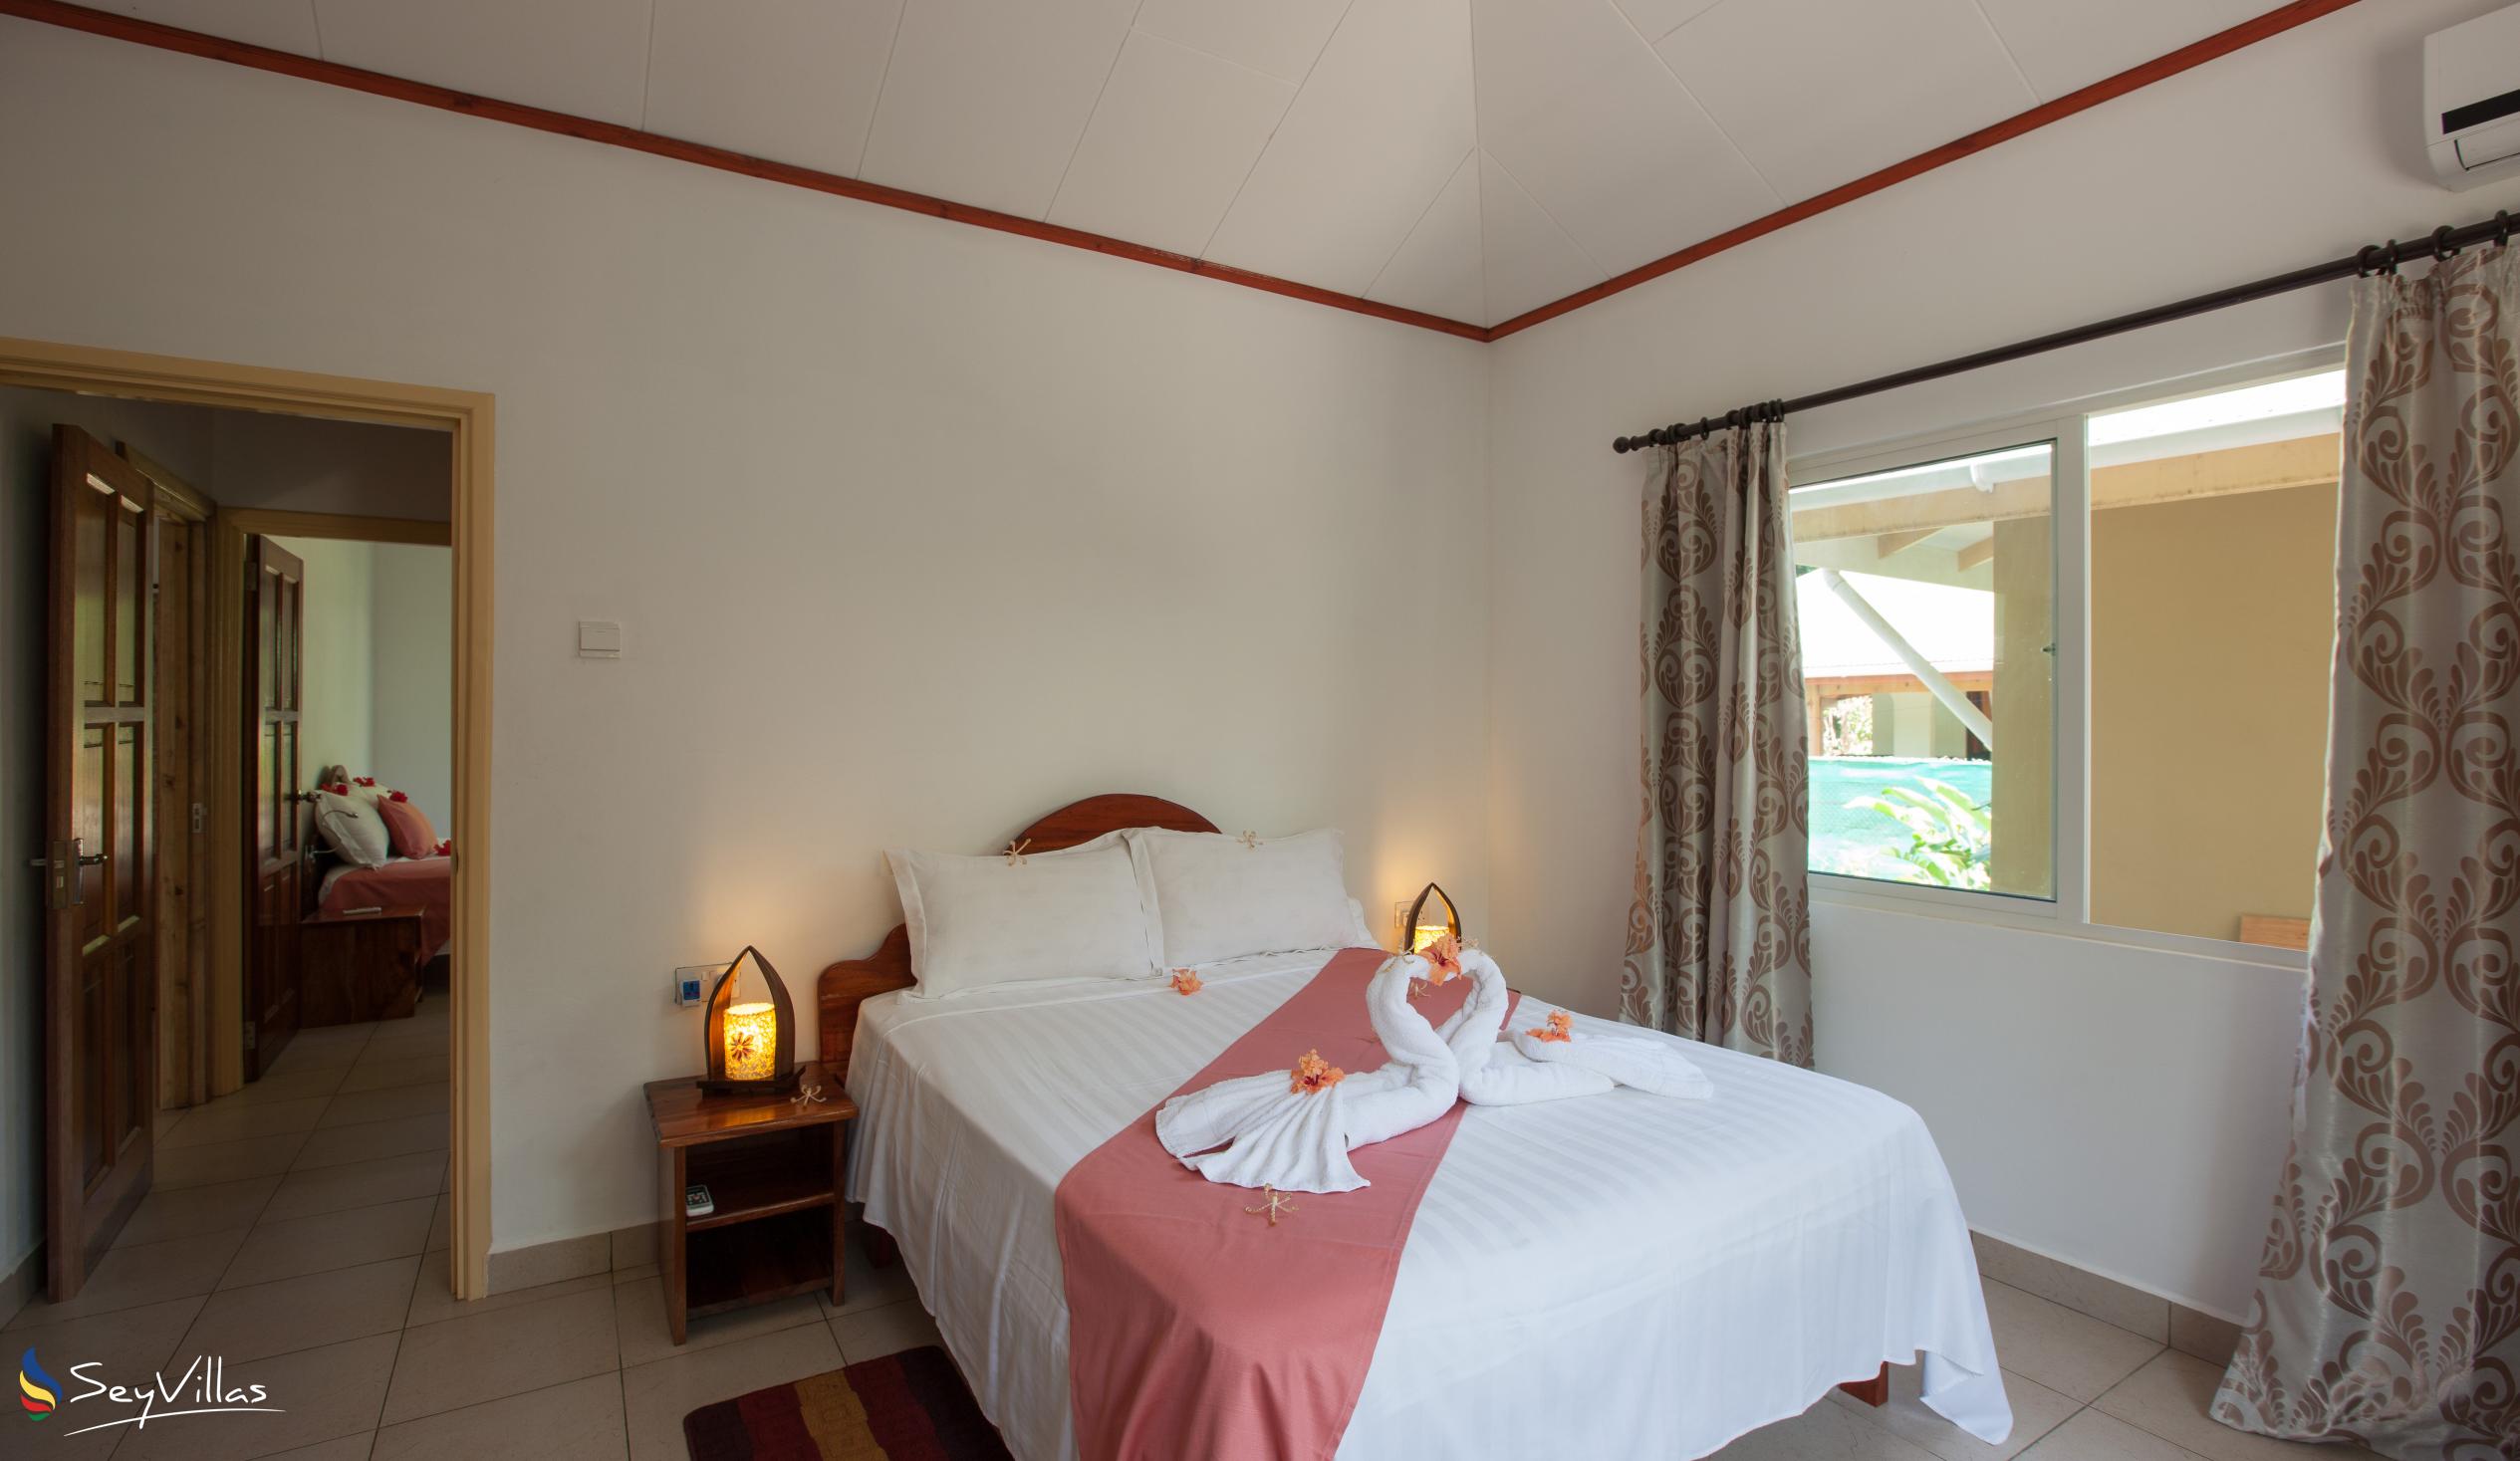 Foto 22: Hostellerie La Digue - Bungalow con 3 camere da letto - La Digue (Seychelles)